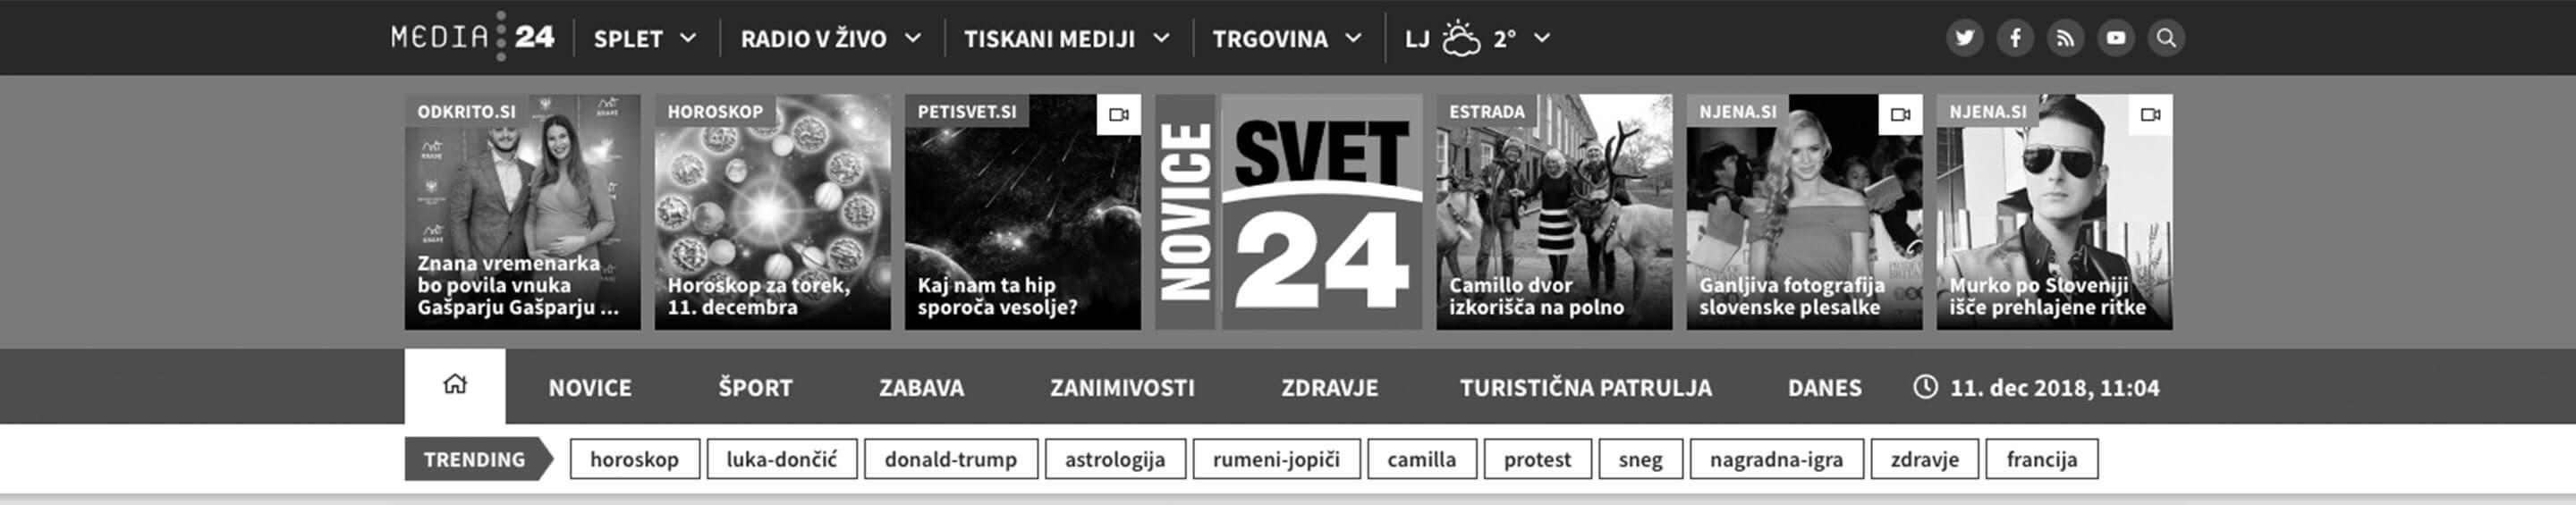 Svet24 header preview